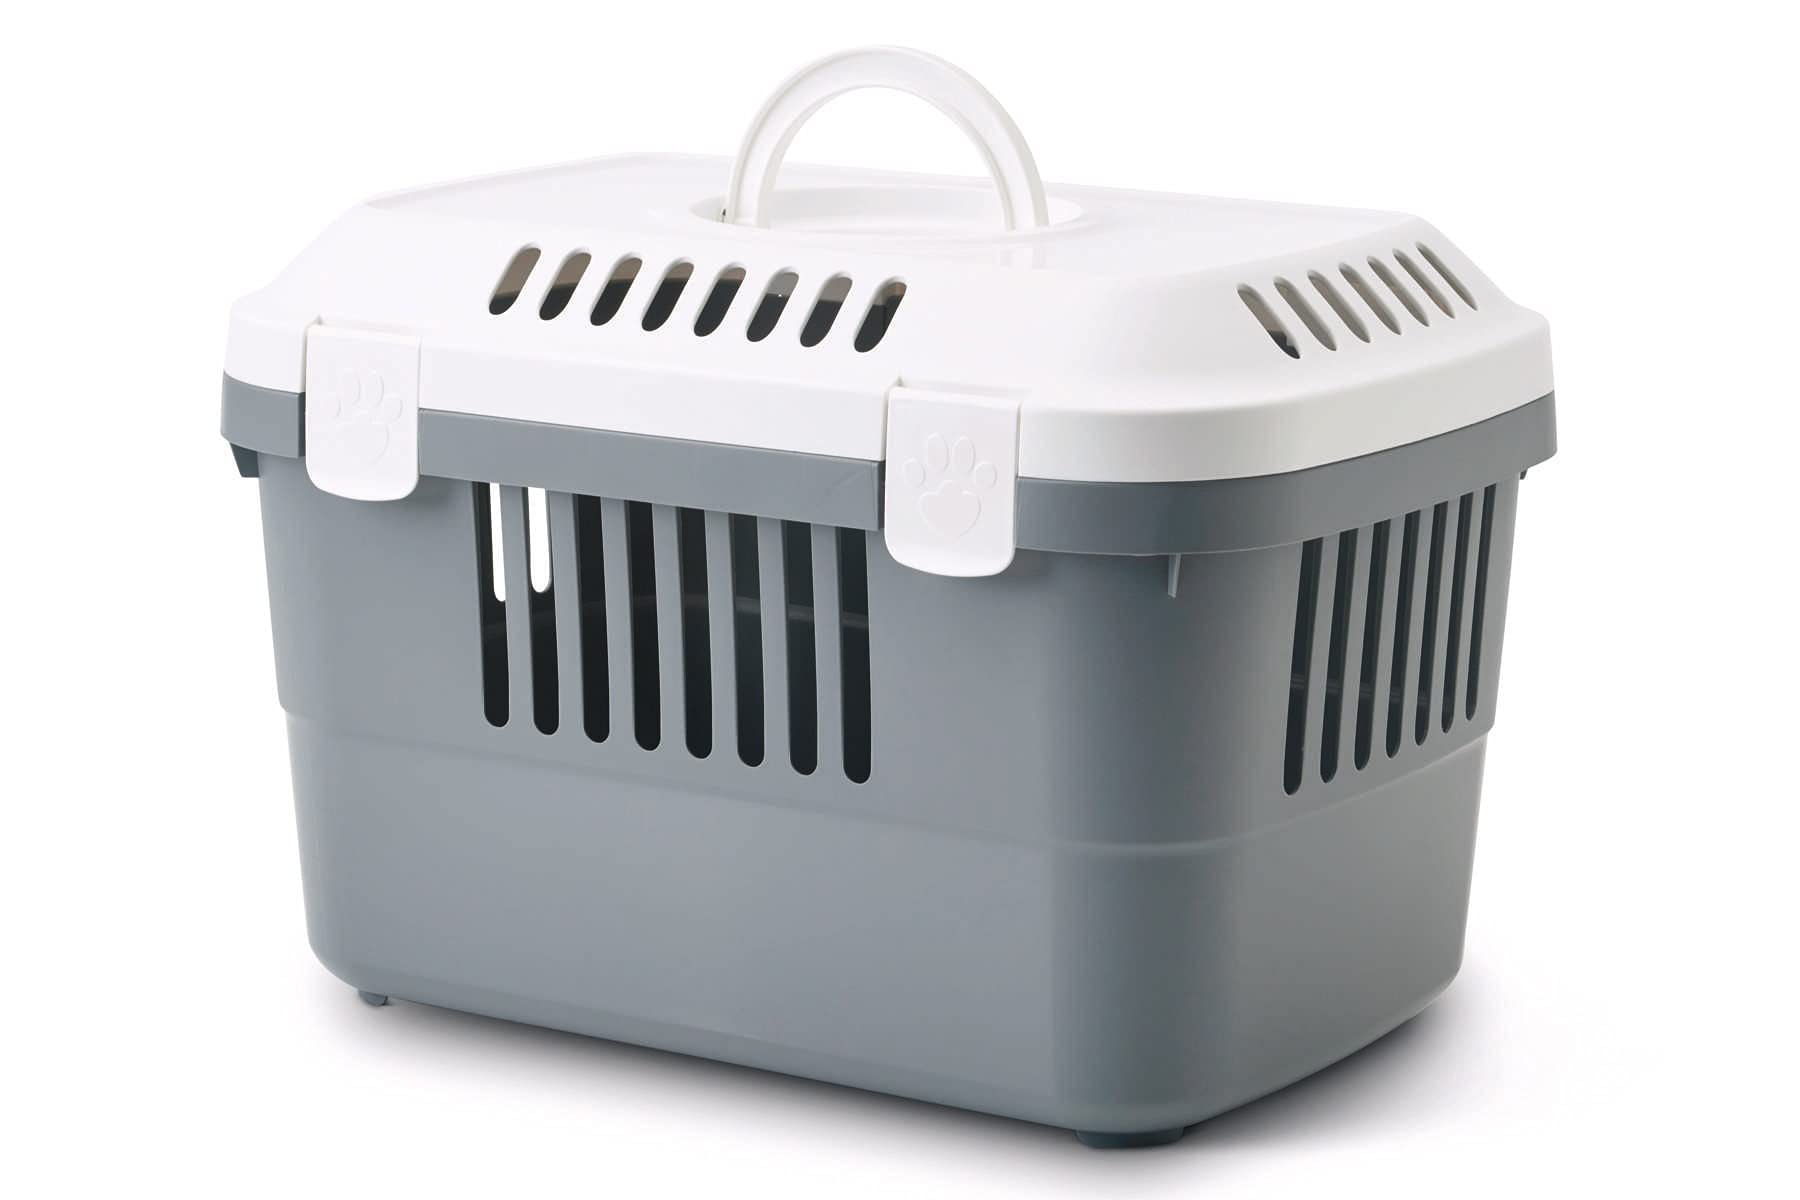 Transportbox für Meerschweinchen, Kaninchen, Katzen, Nager und kleine Hunde Weiss-Grau